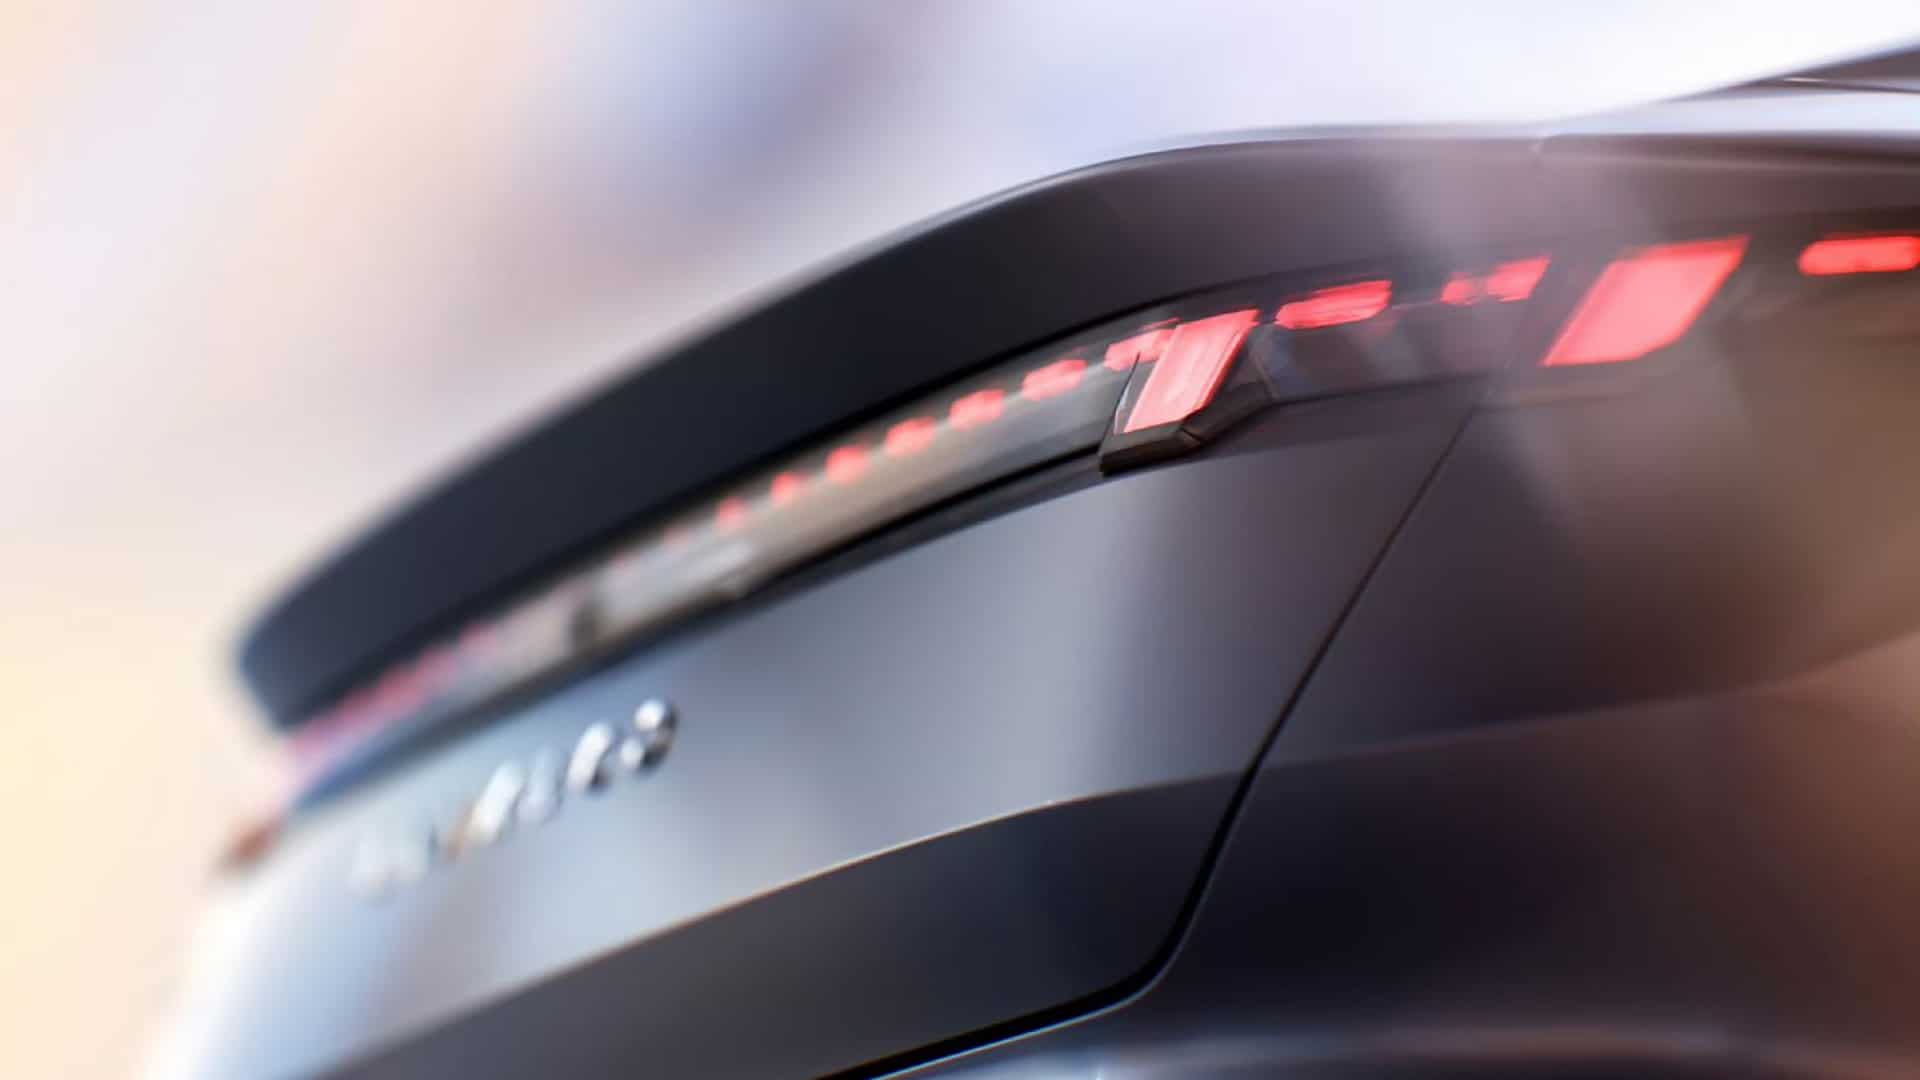 На тизерных изображениях был представлен Lynk & Co Zero — новый электрический седан, который готовится к выходу на рынок. Задний фонарь автомобиля состоит из нескольких прямоугольных светодиодных элементов, аналогичных недавно выпущенным моделям Lynk